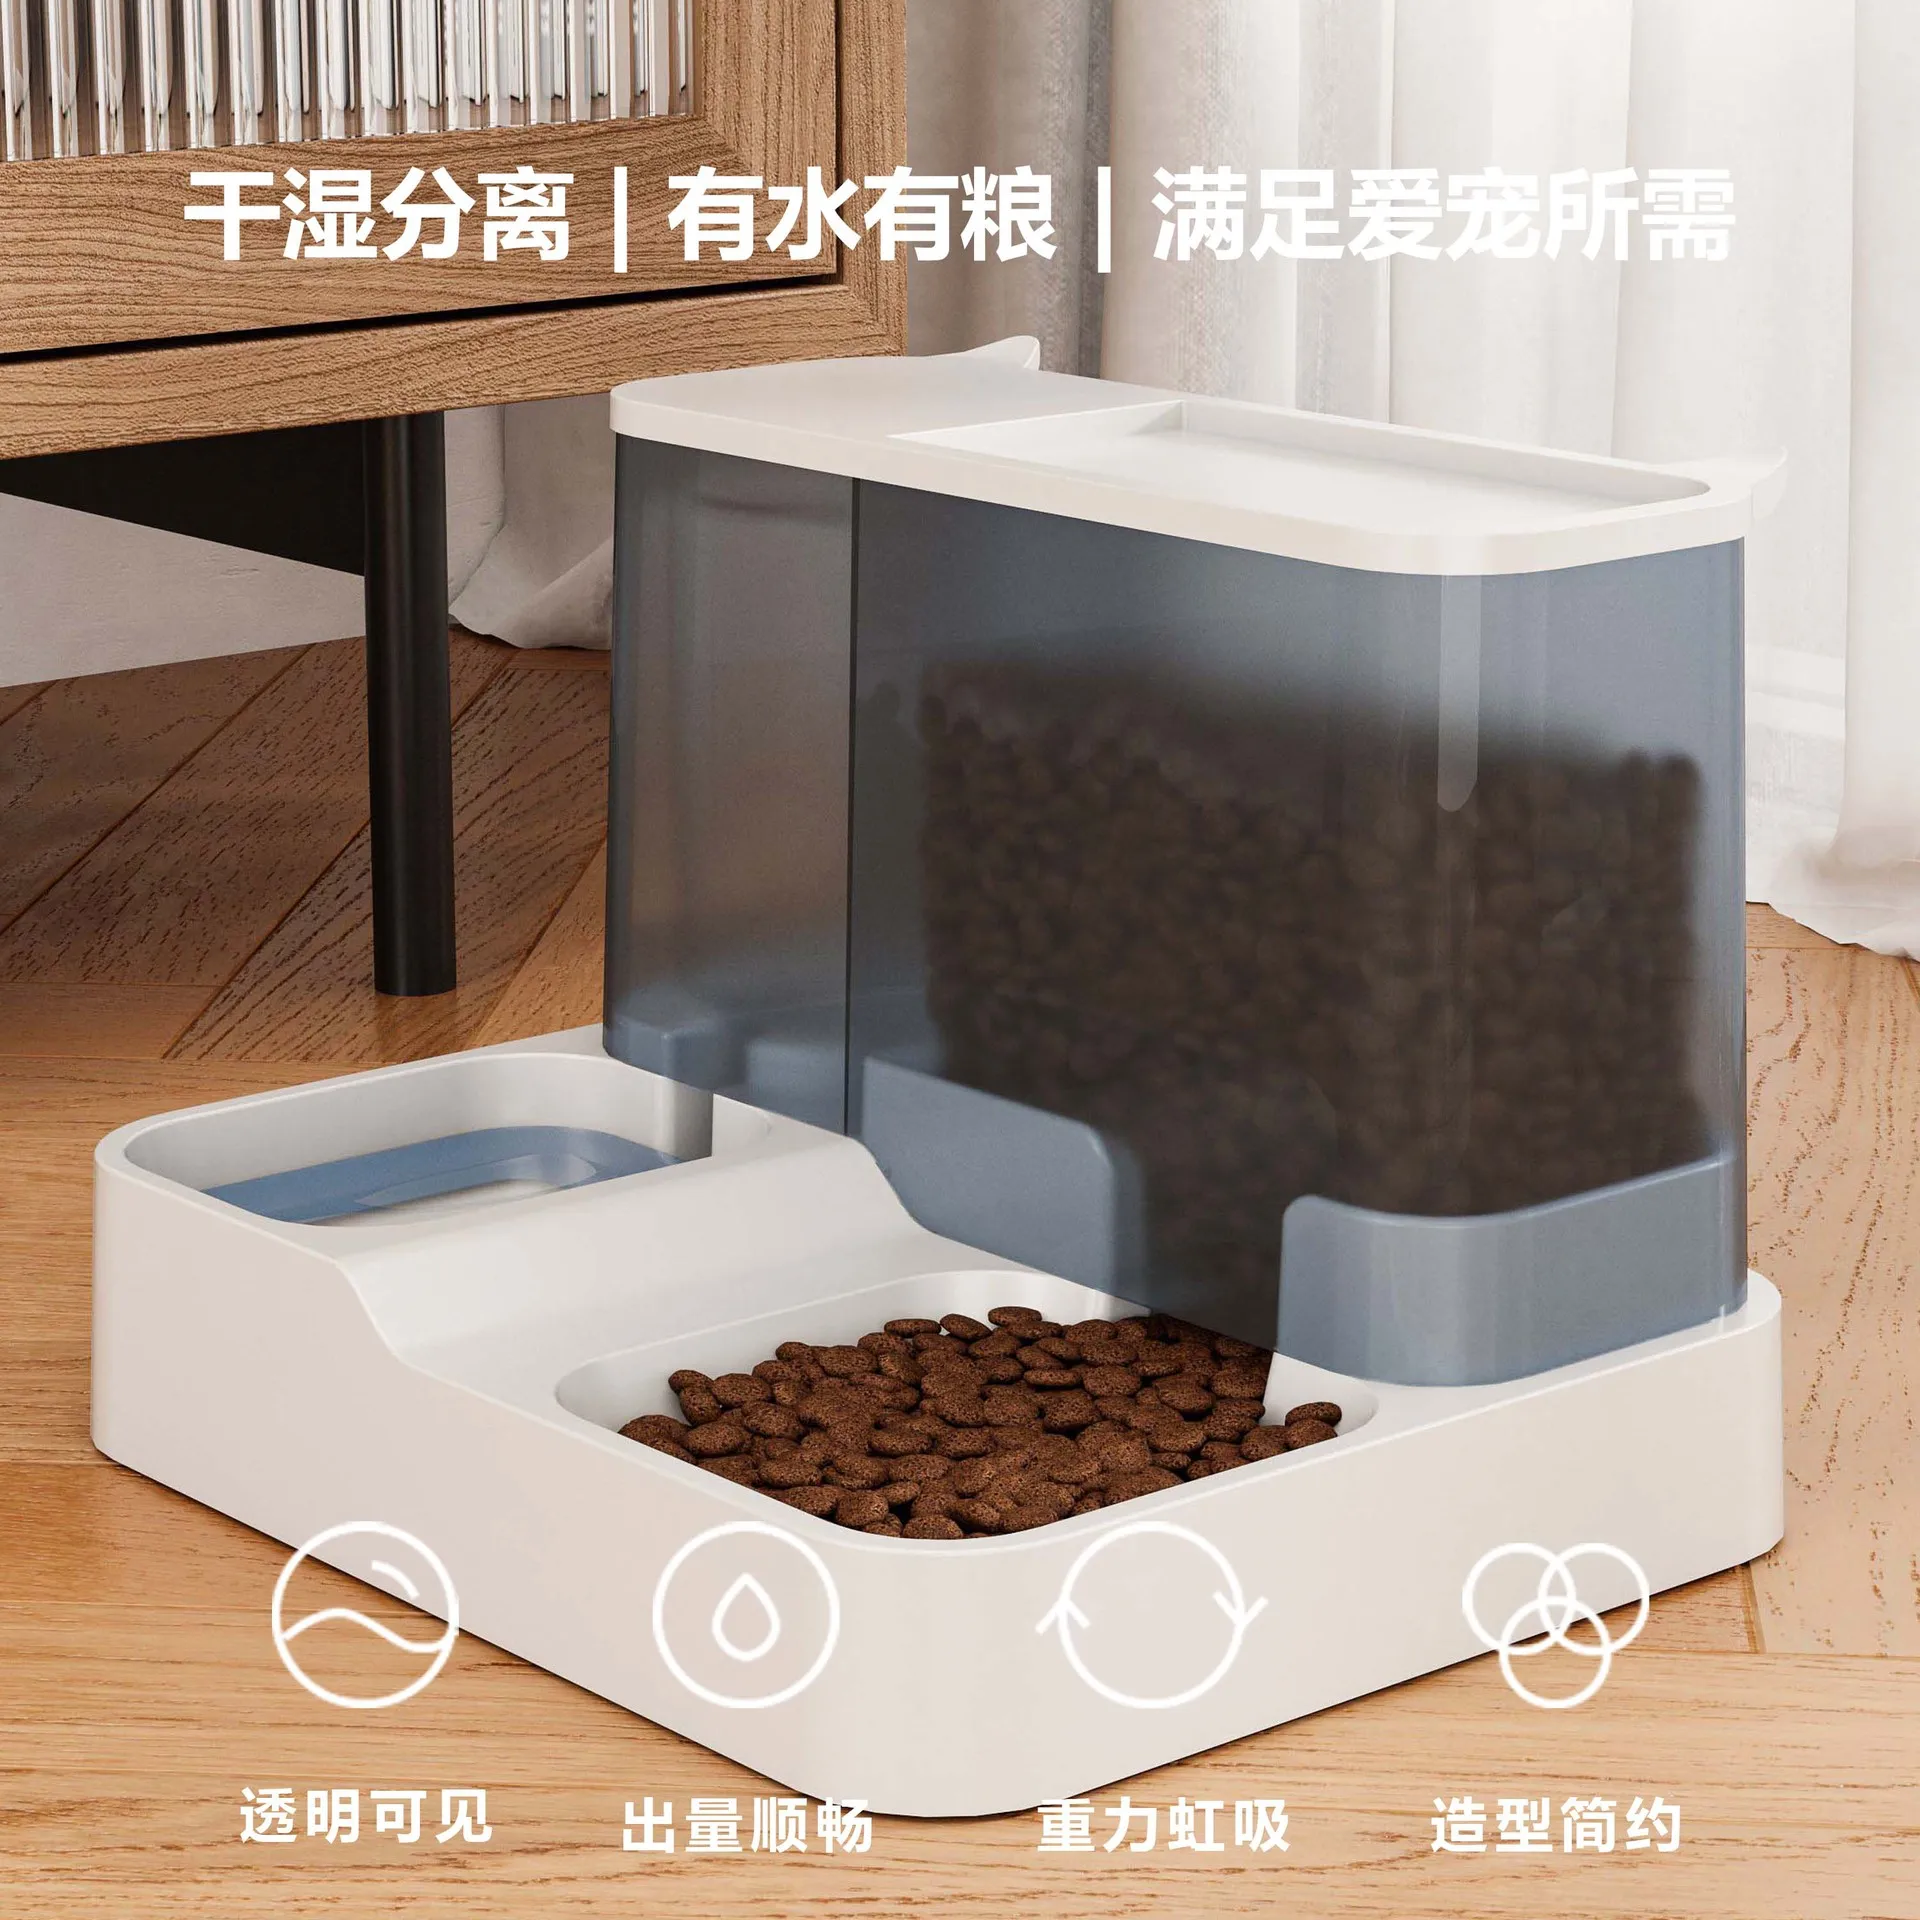 Автоматическая кормушка для кошек, диспенсер для воды, миска для кошек большой емкости, универсальная проточная вода без мокрого рта 2